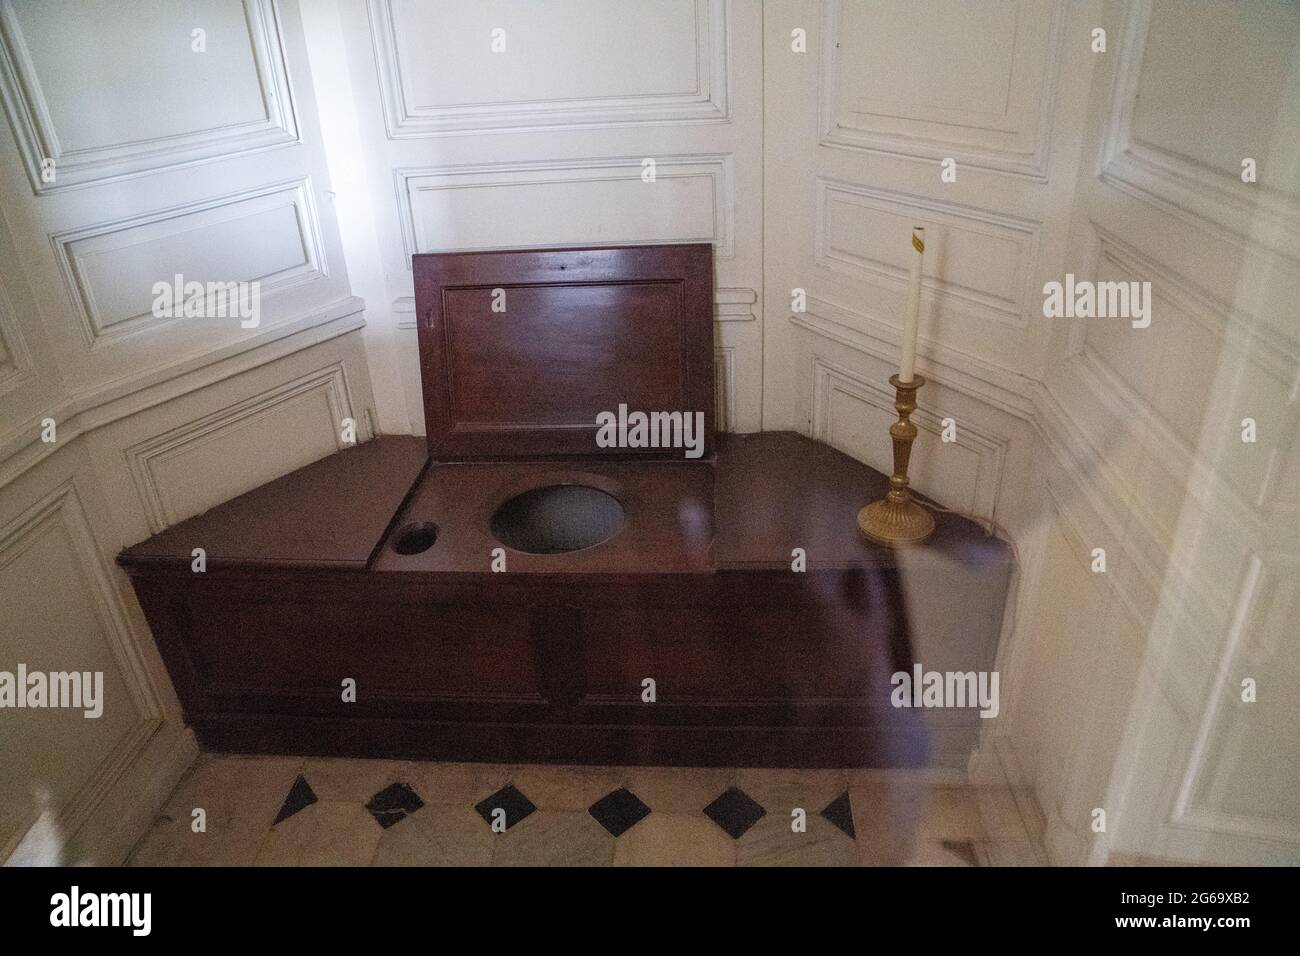 gabinetto di Maria Antonietta o gabinetto de la Chaise à l'Anglaise de la  Reine o sedia inglese nella Reggia di Versailles in Francia Foto stock -  Alamy